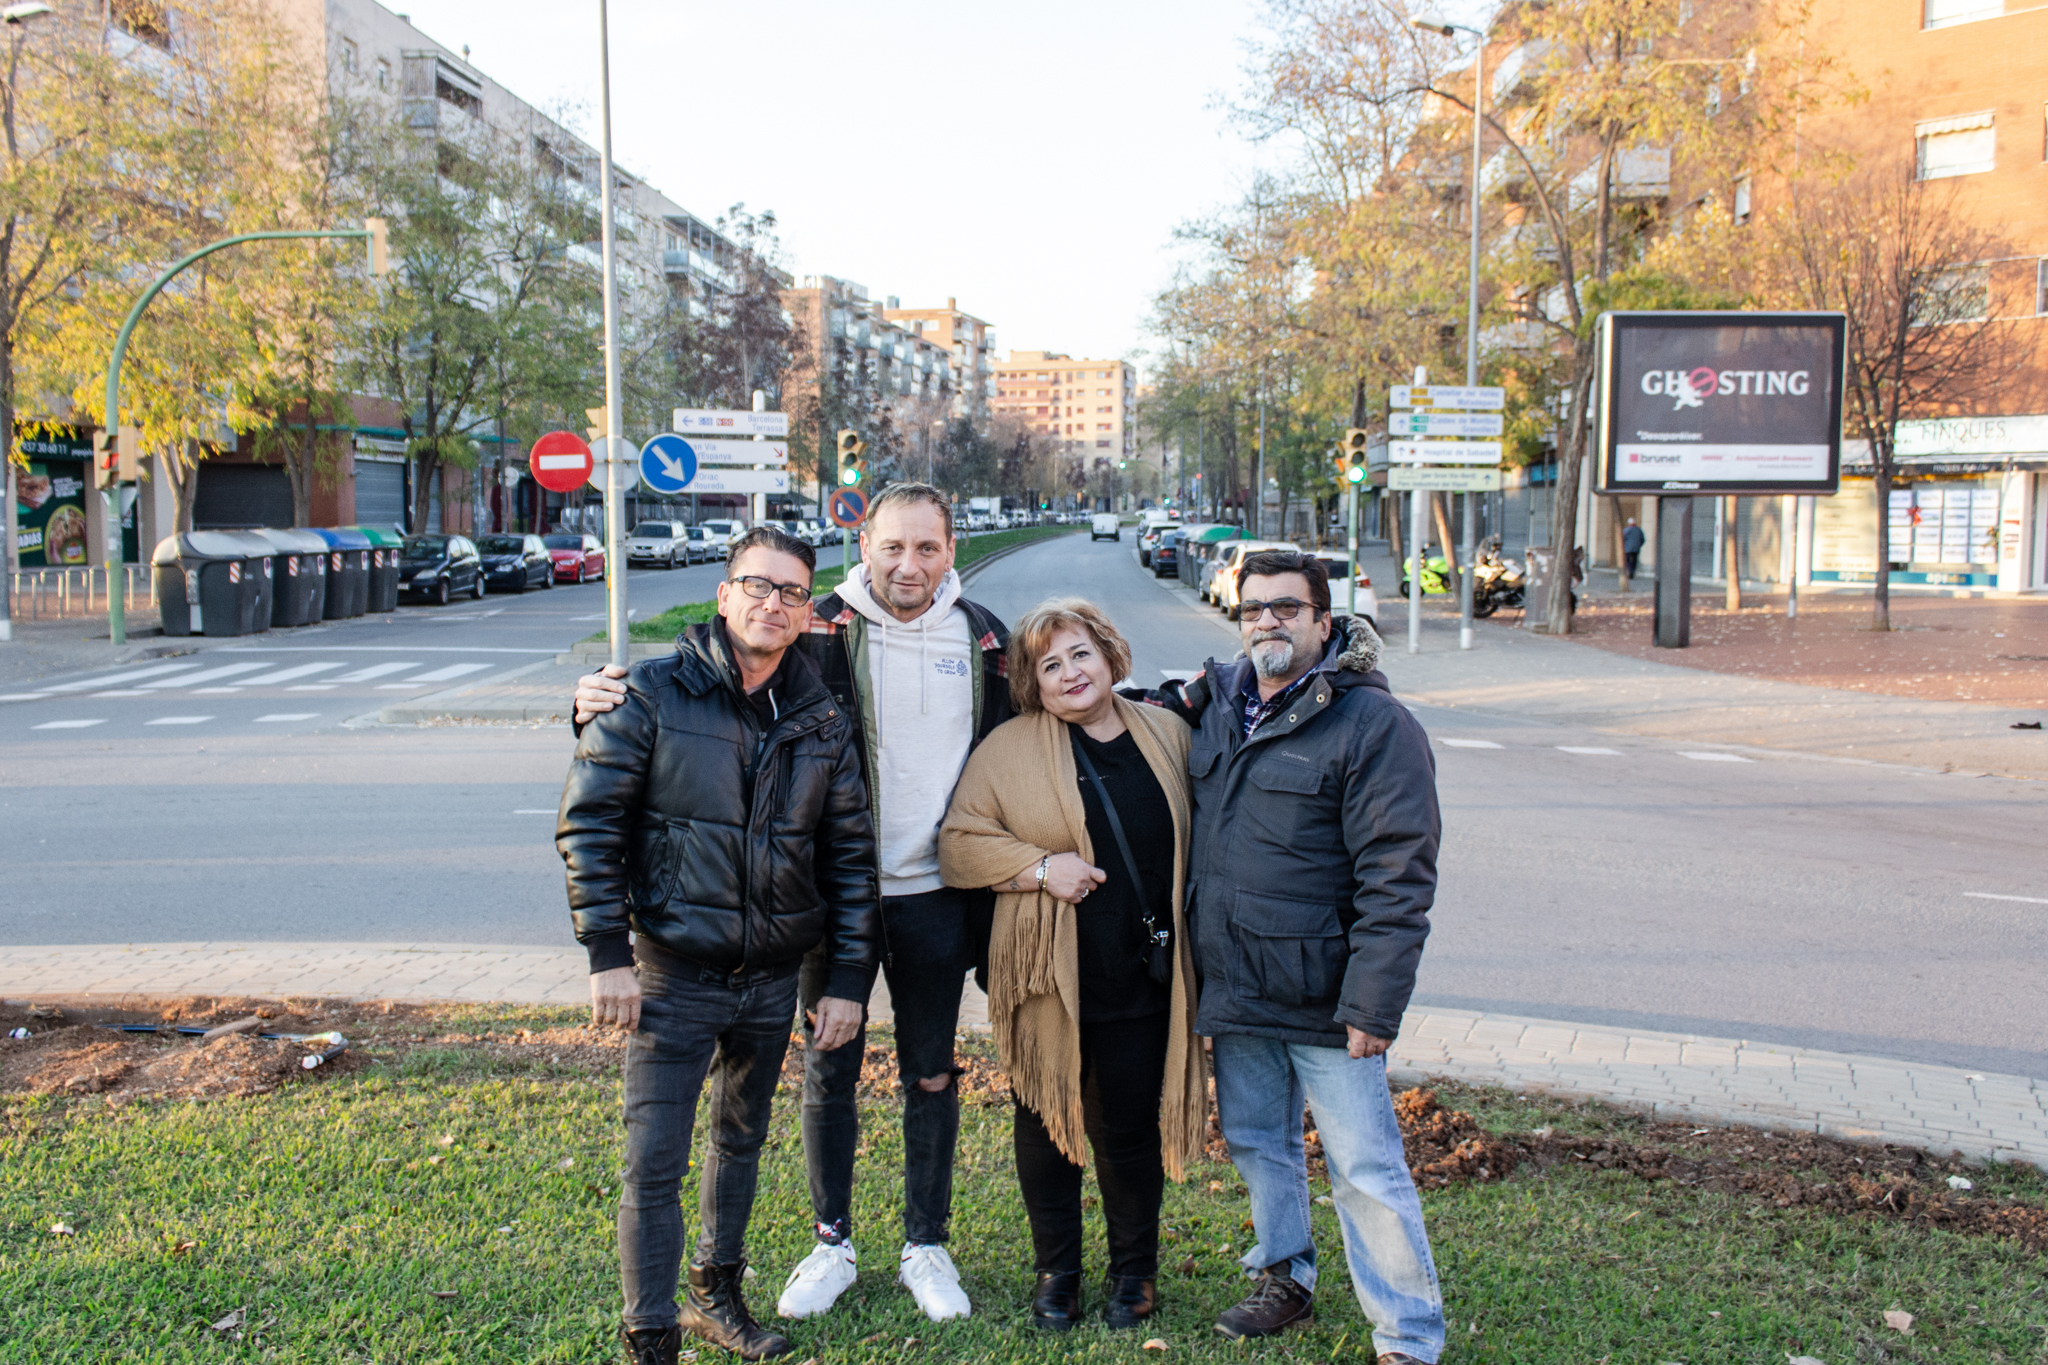 Veïns del barri de Can Llong –l’Antonio, el Jorge, l’Ana i l’Emilio–, que demanen que l’estació de Can Llong sigui una realitat